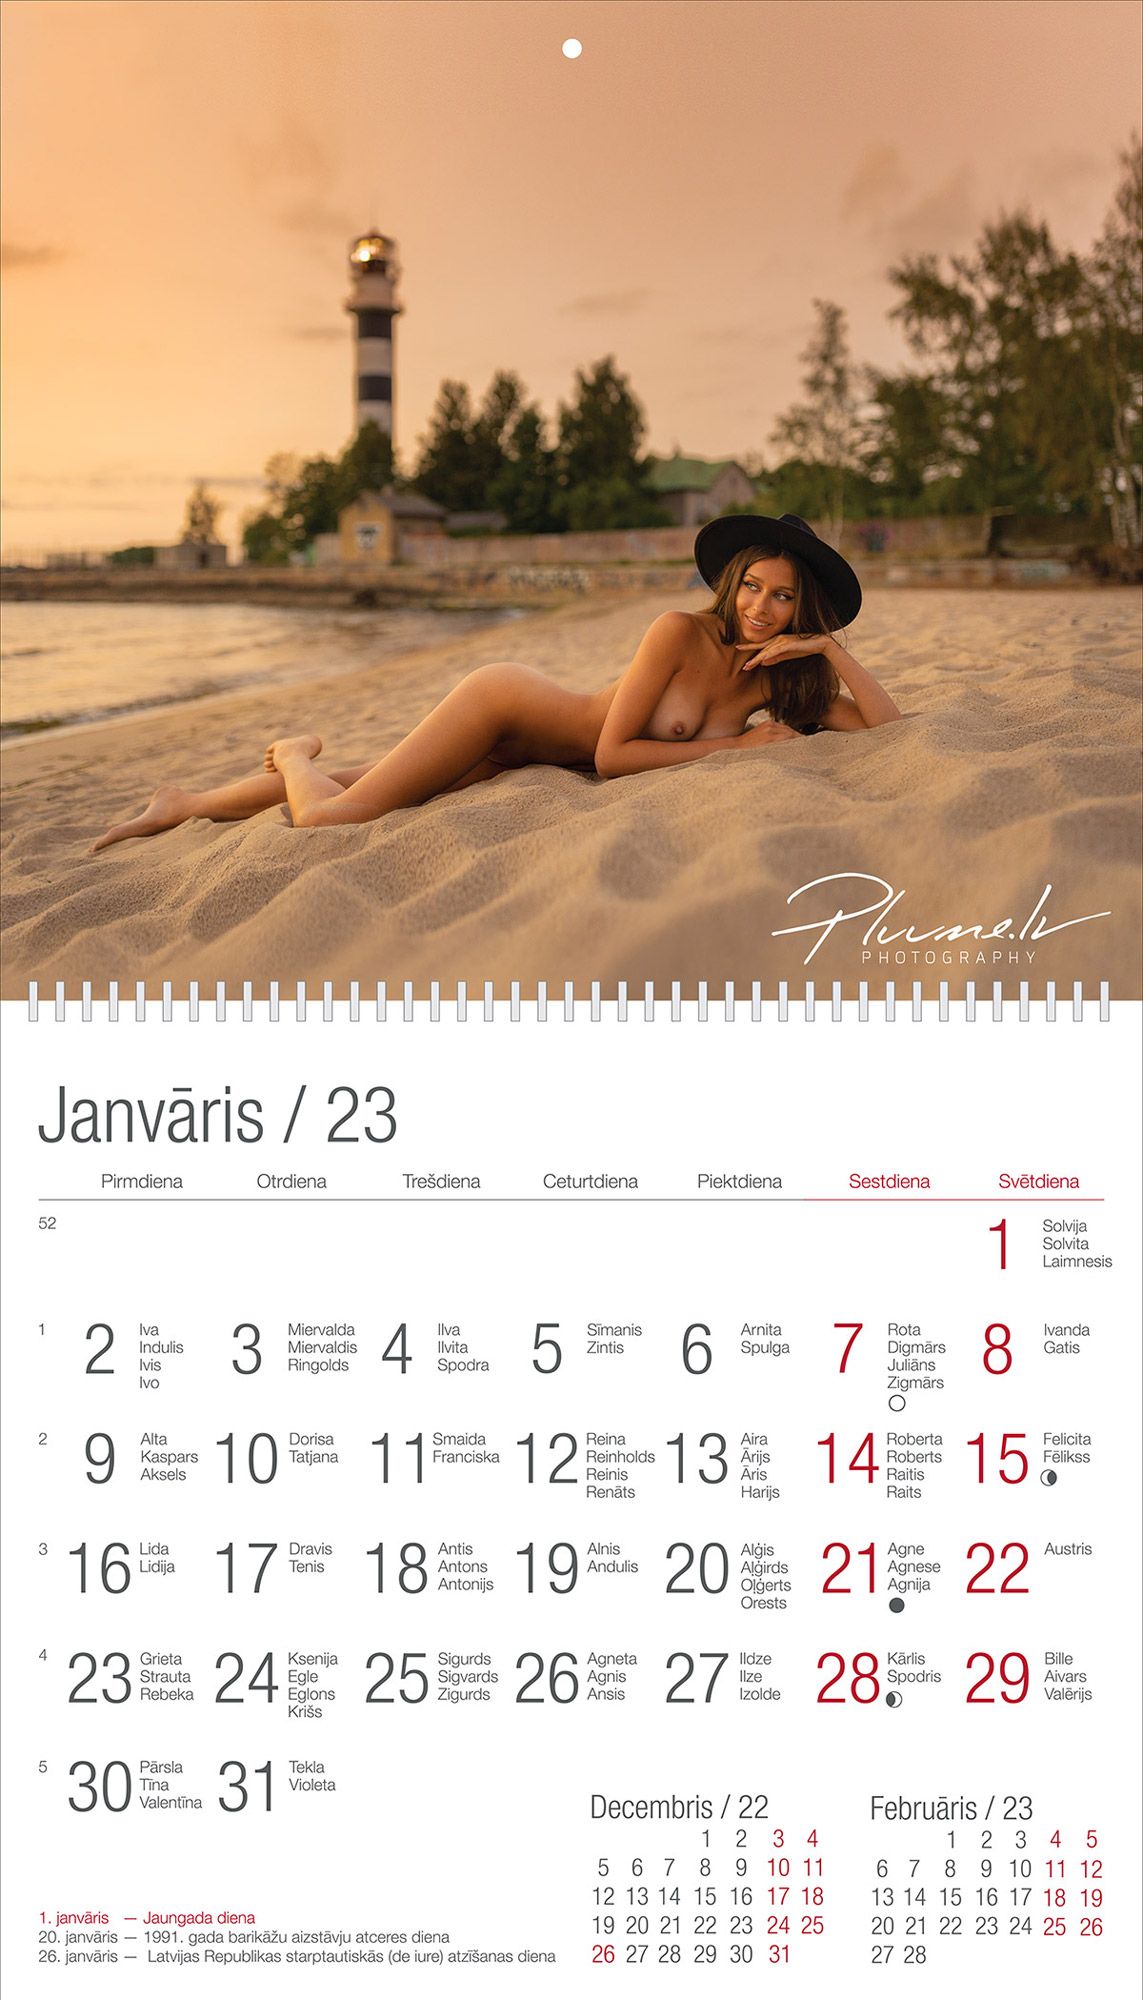 Mārtiņš Plūme | Erotiskas kailfoto kalendārs 2023 gadam, (mazais kalendārs) APE Motors | Nude art photographer Latvia Martins Plume kailfoto kalendars